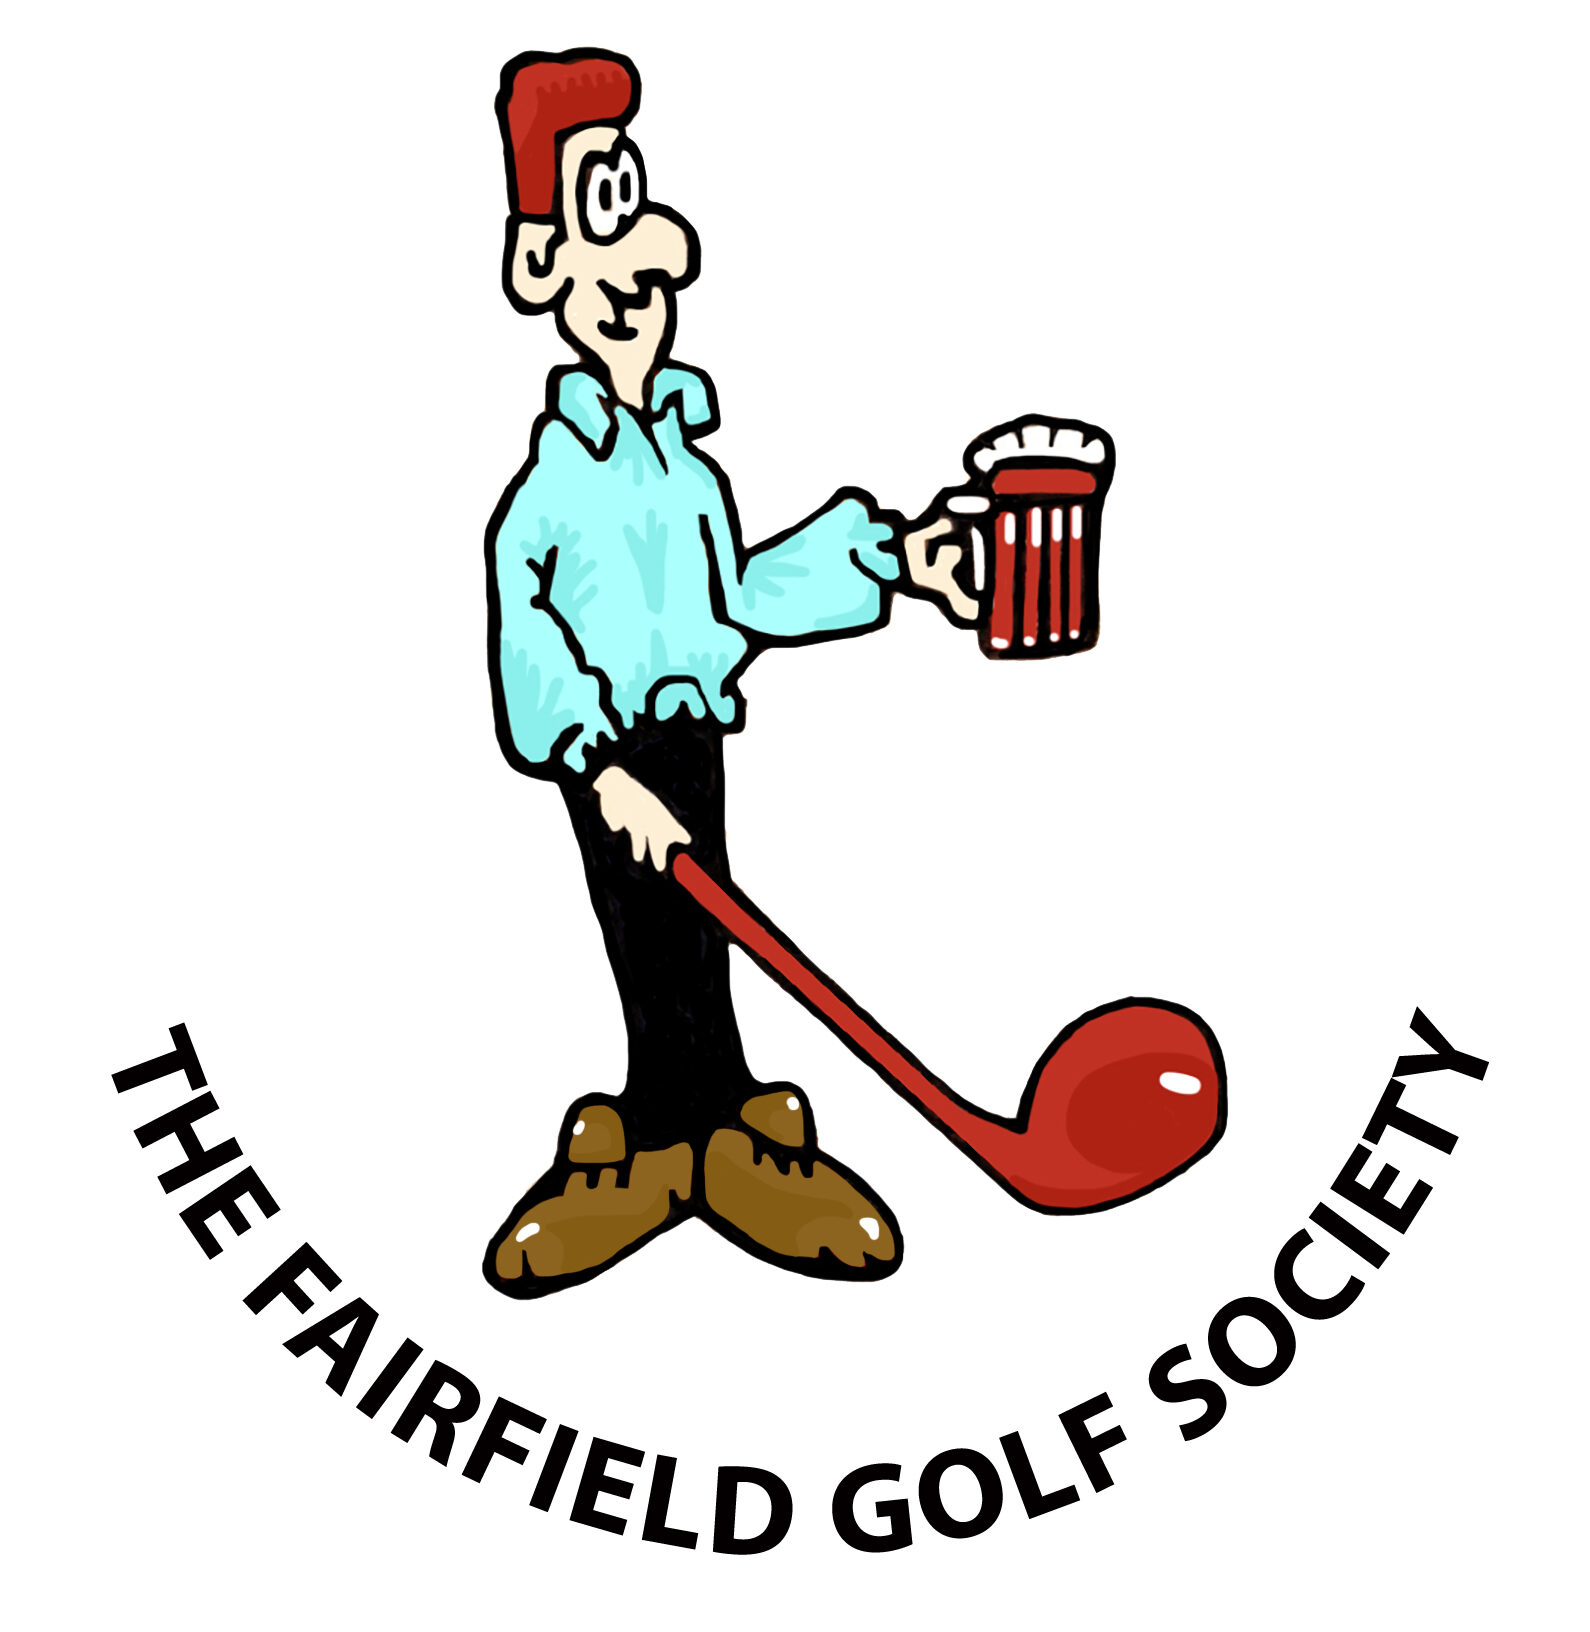 Fairfield Golf Society